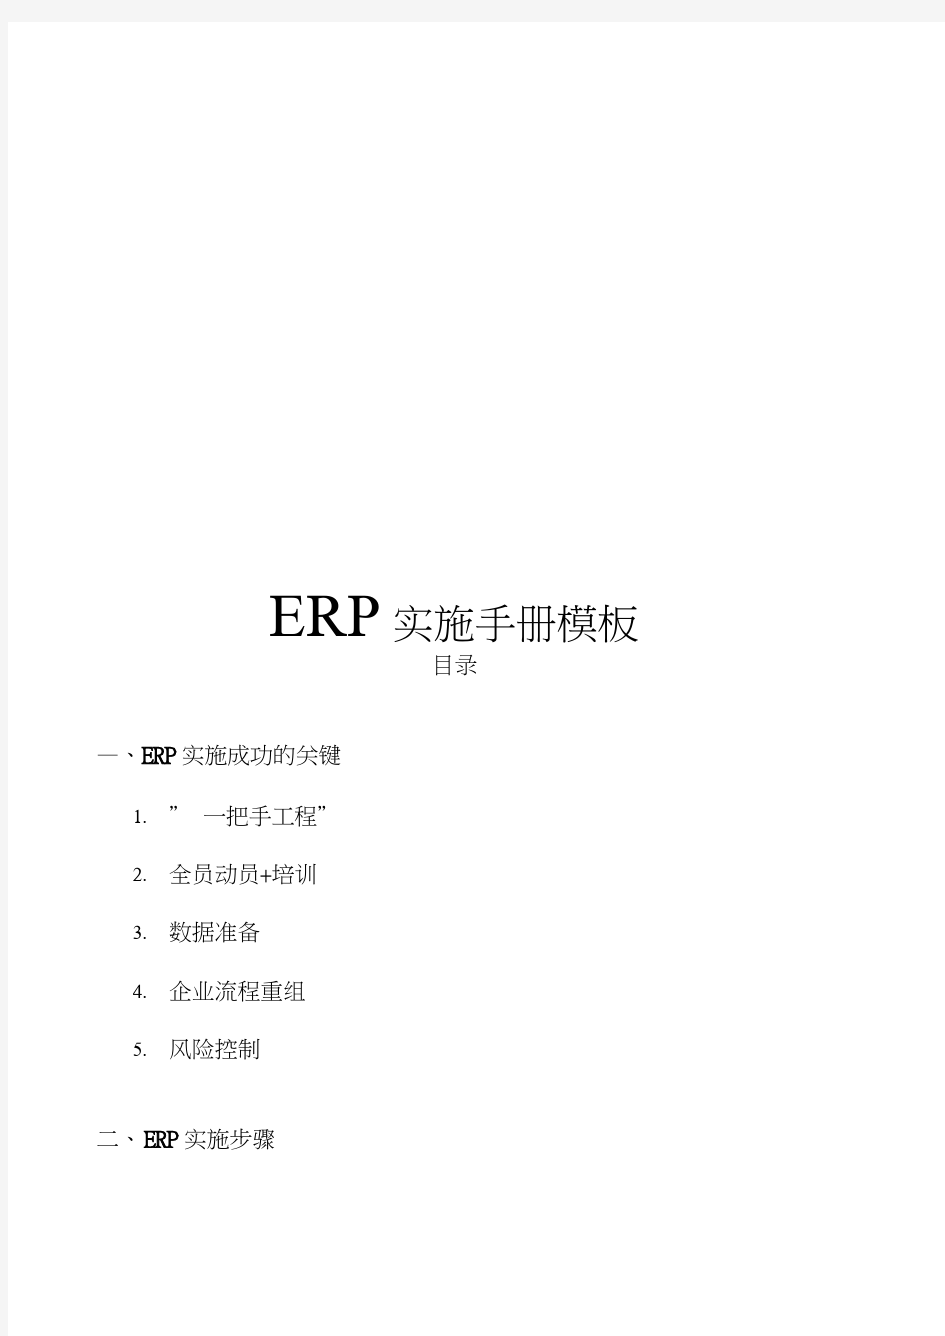 ERP实施手册模板